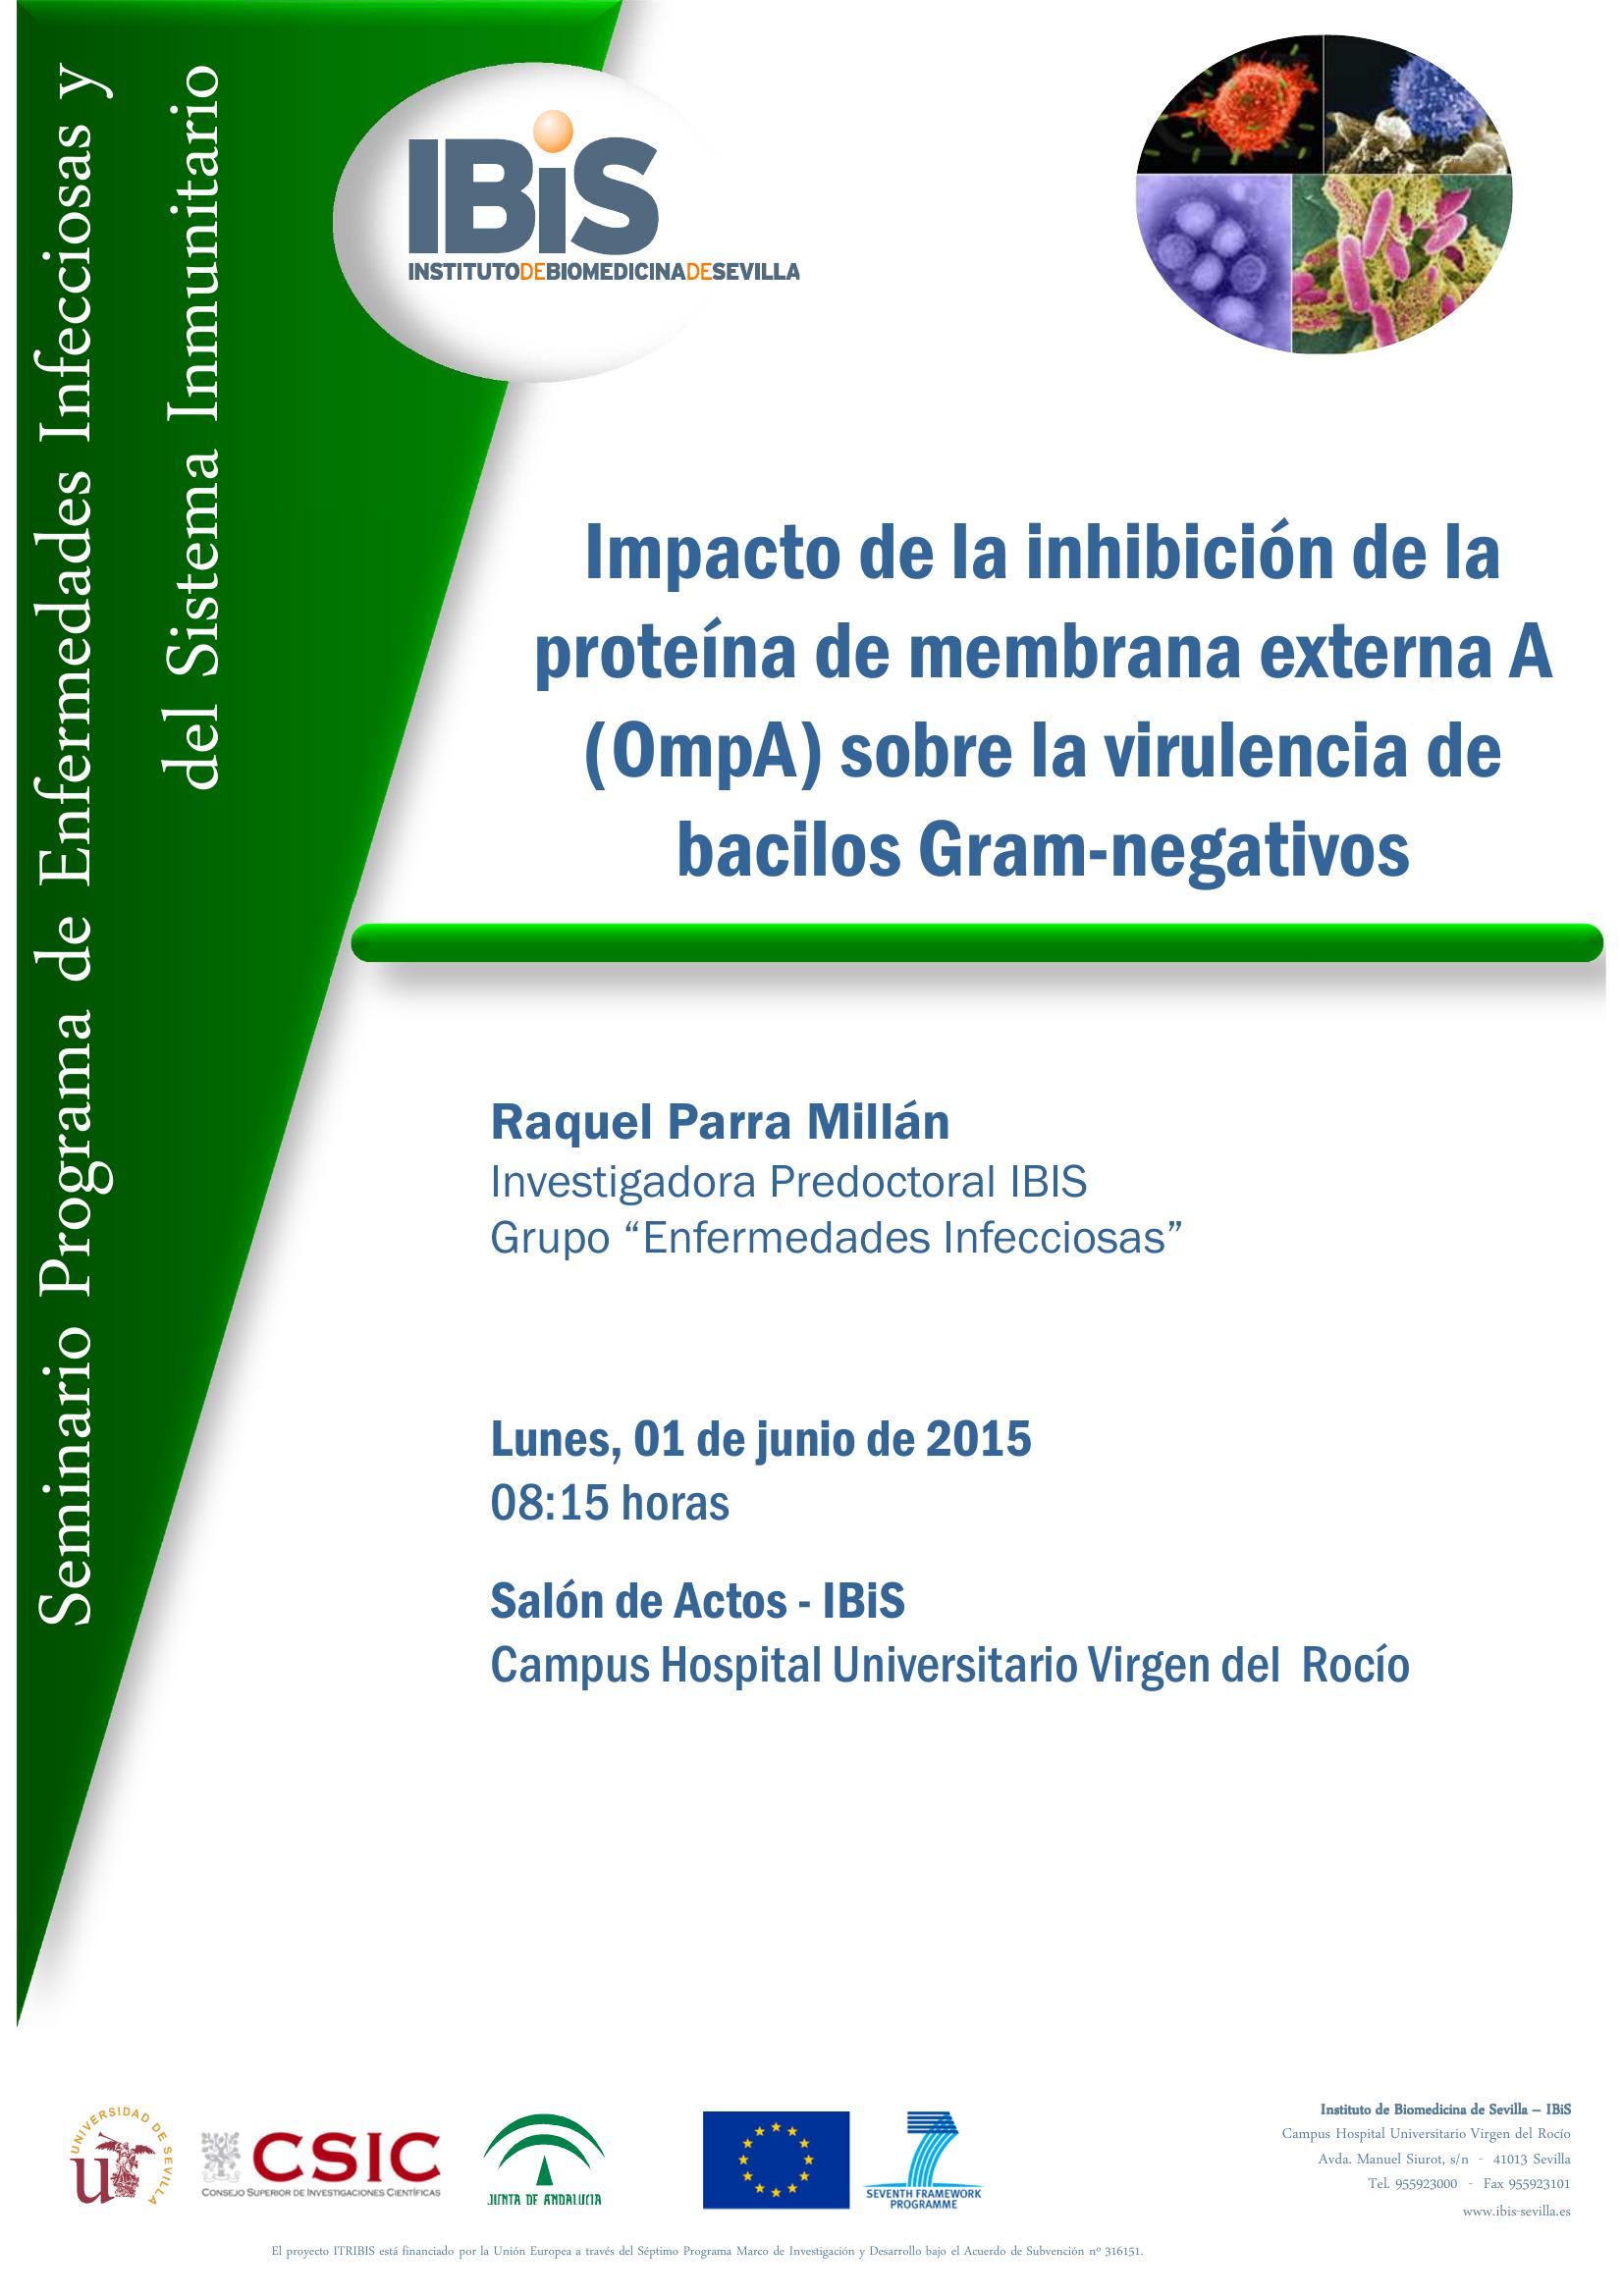 Poster: Impacto de la inhibición de la proteína de membrana externa A (OmpA) sobre la virulencia de bacilos Gram-negativos